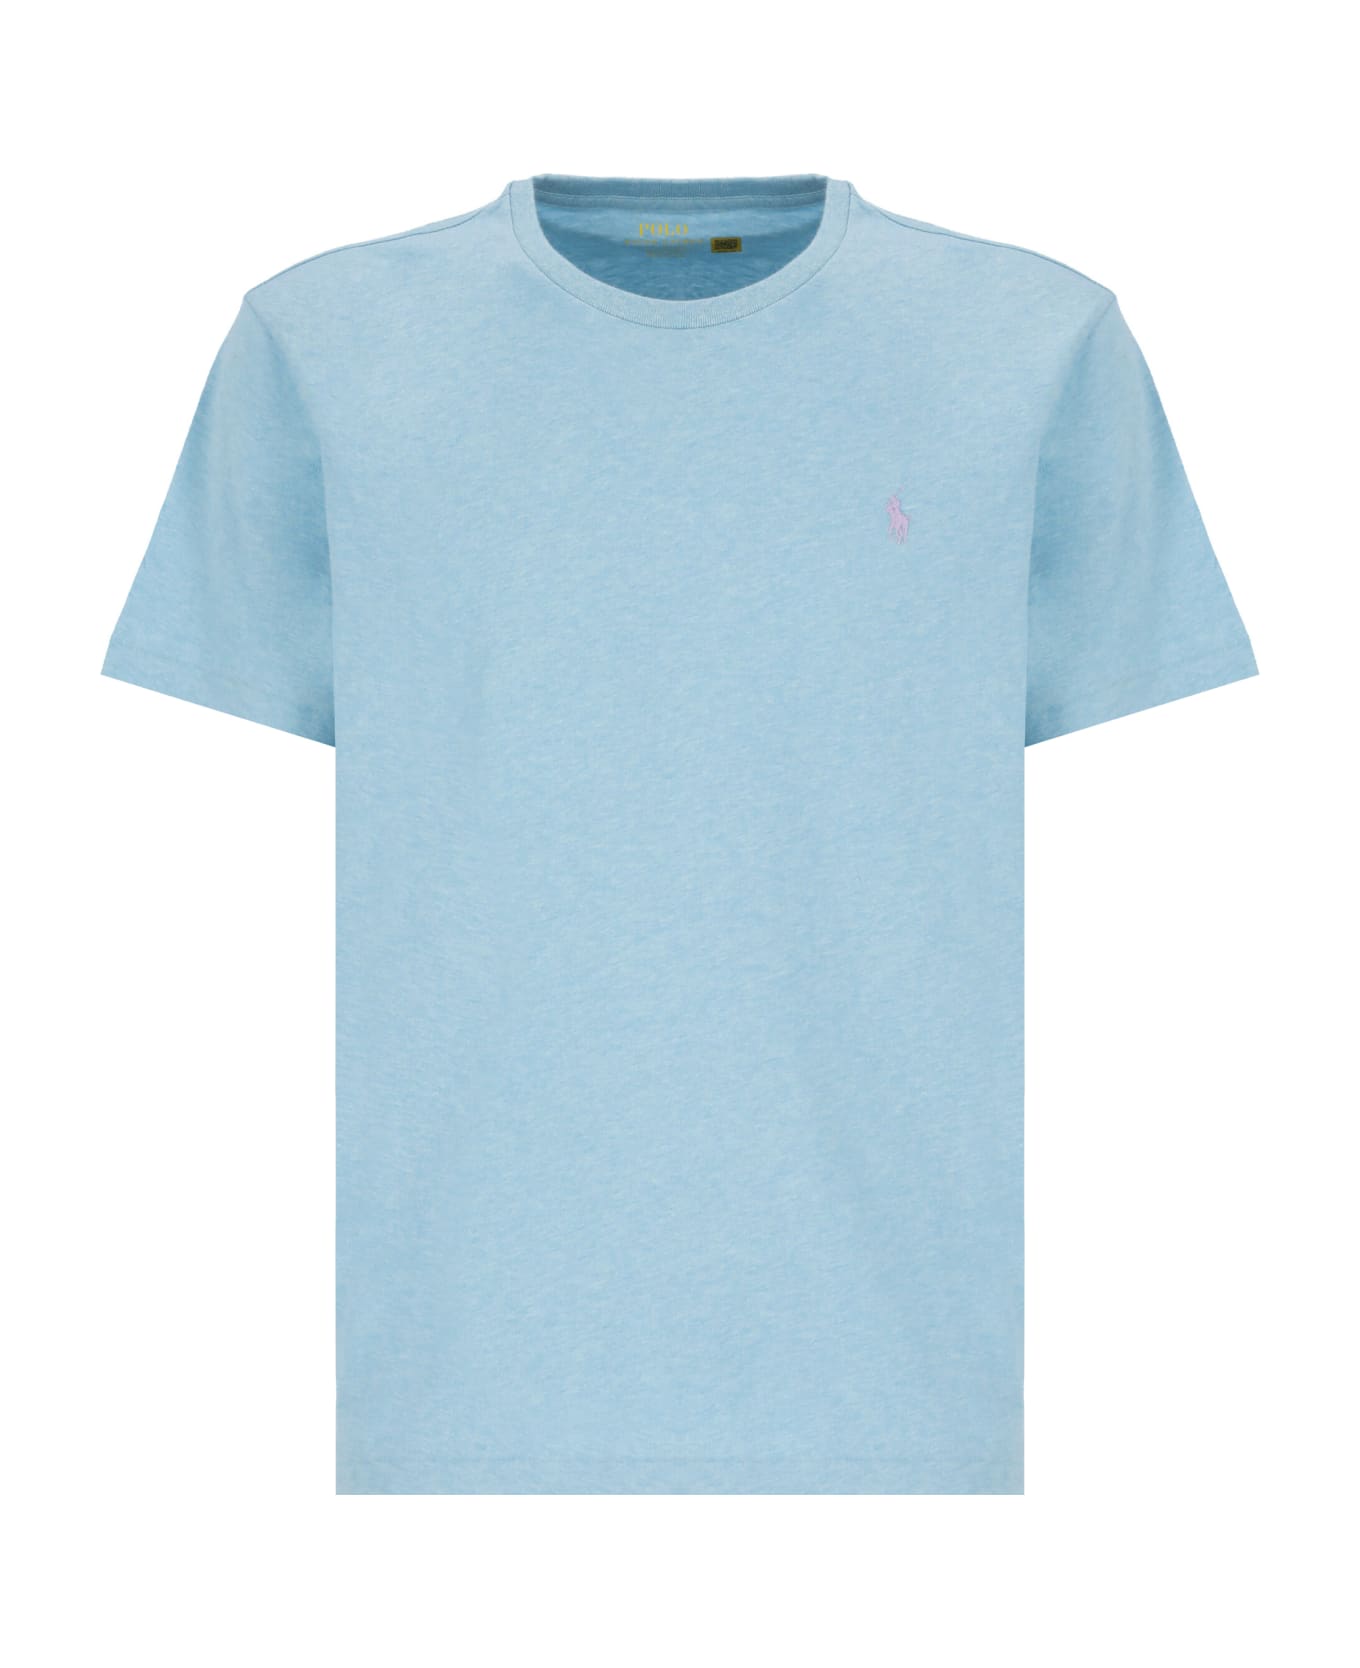 Ralph Lauren Pony T-shirt - Light Blue